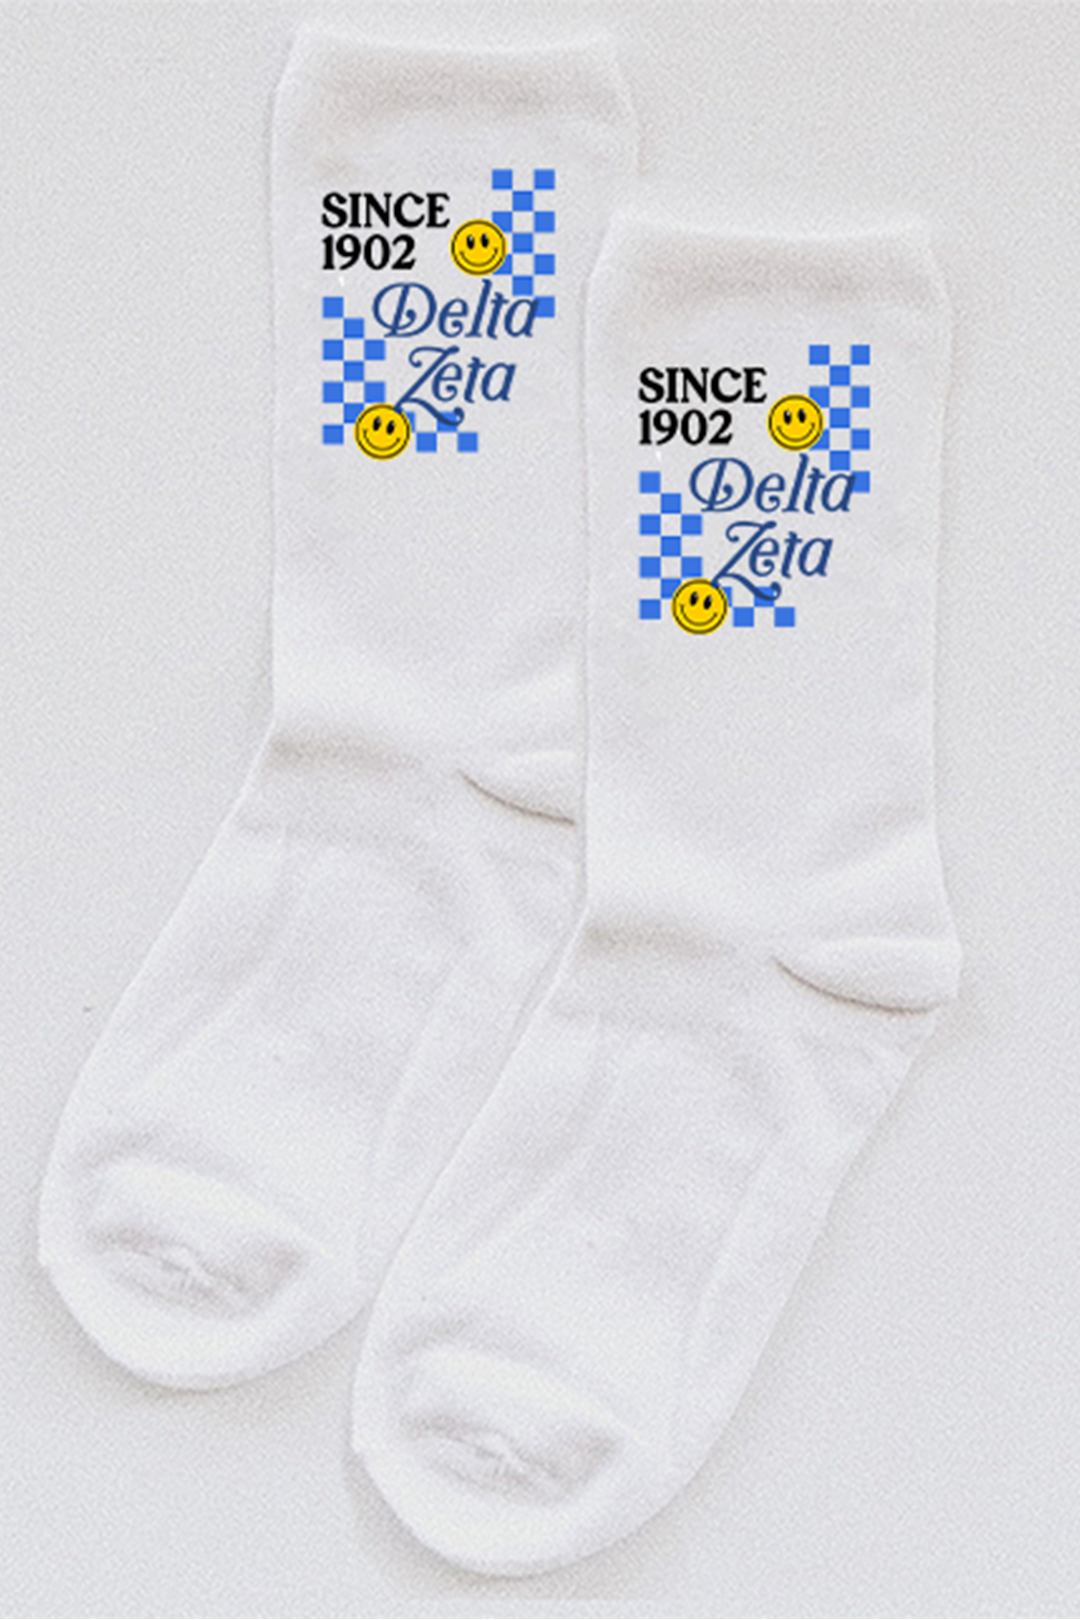 Blue Checkered socks - Delta Zeta